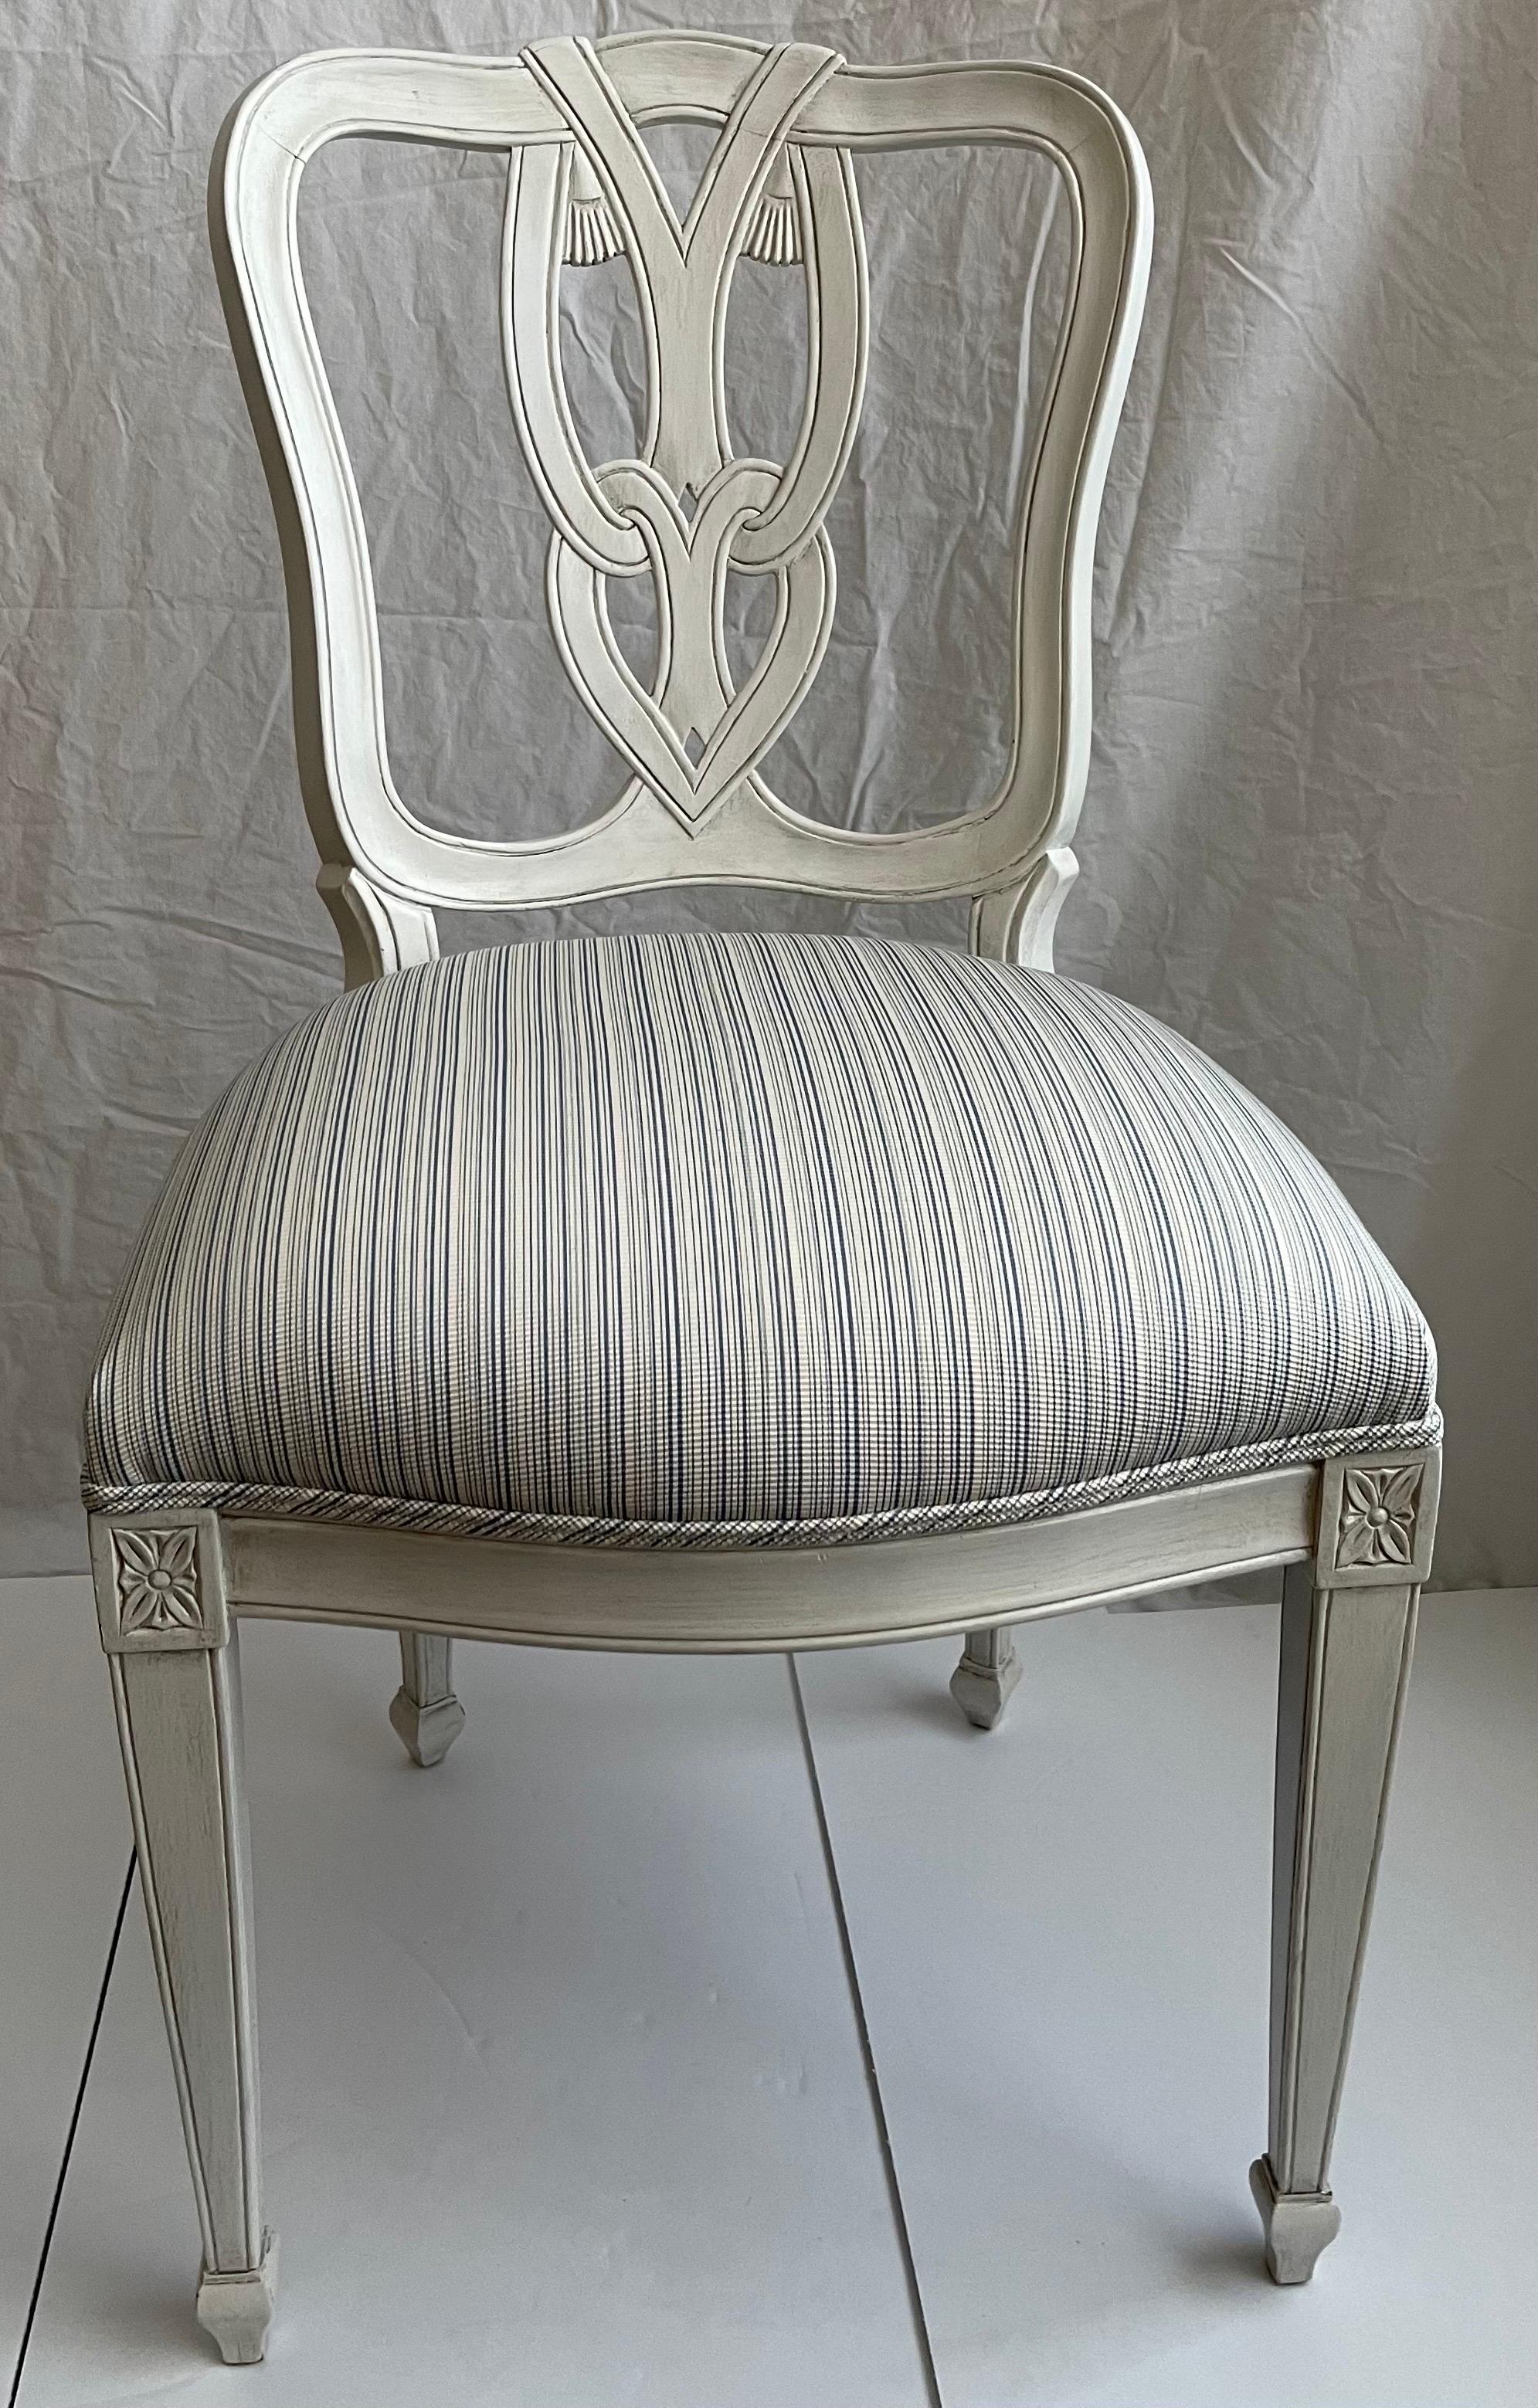 Beistellstuhl im Hollywood-Regency-Stil mit Quastenmotiv. Neu gestrichen in antikweißer Lackierung. Neu bezogen mit Schumacher-Baumwollgewebe in blau/weiß gestreift. Sitz ist 18